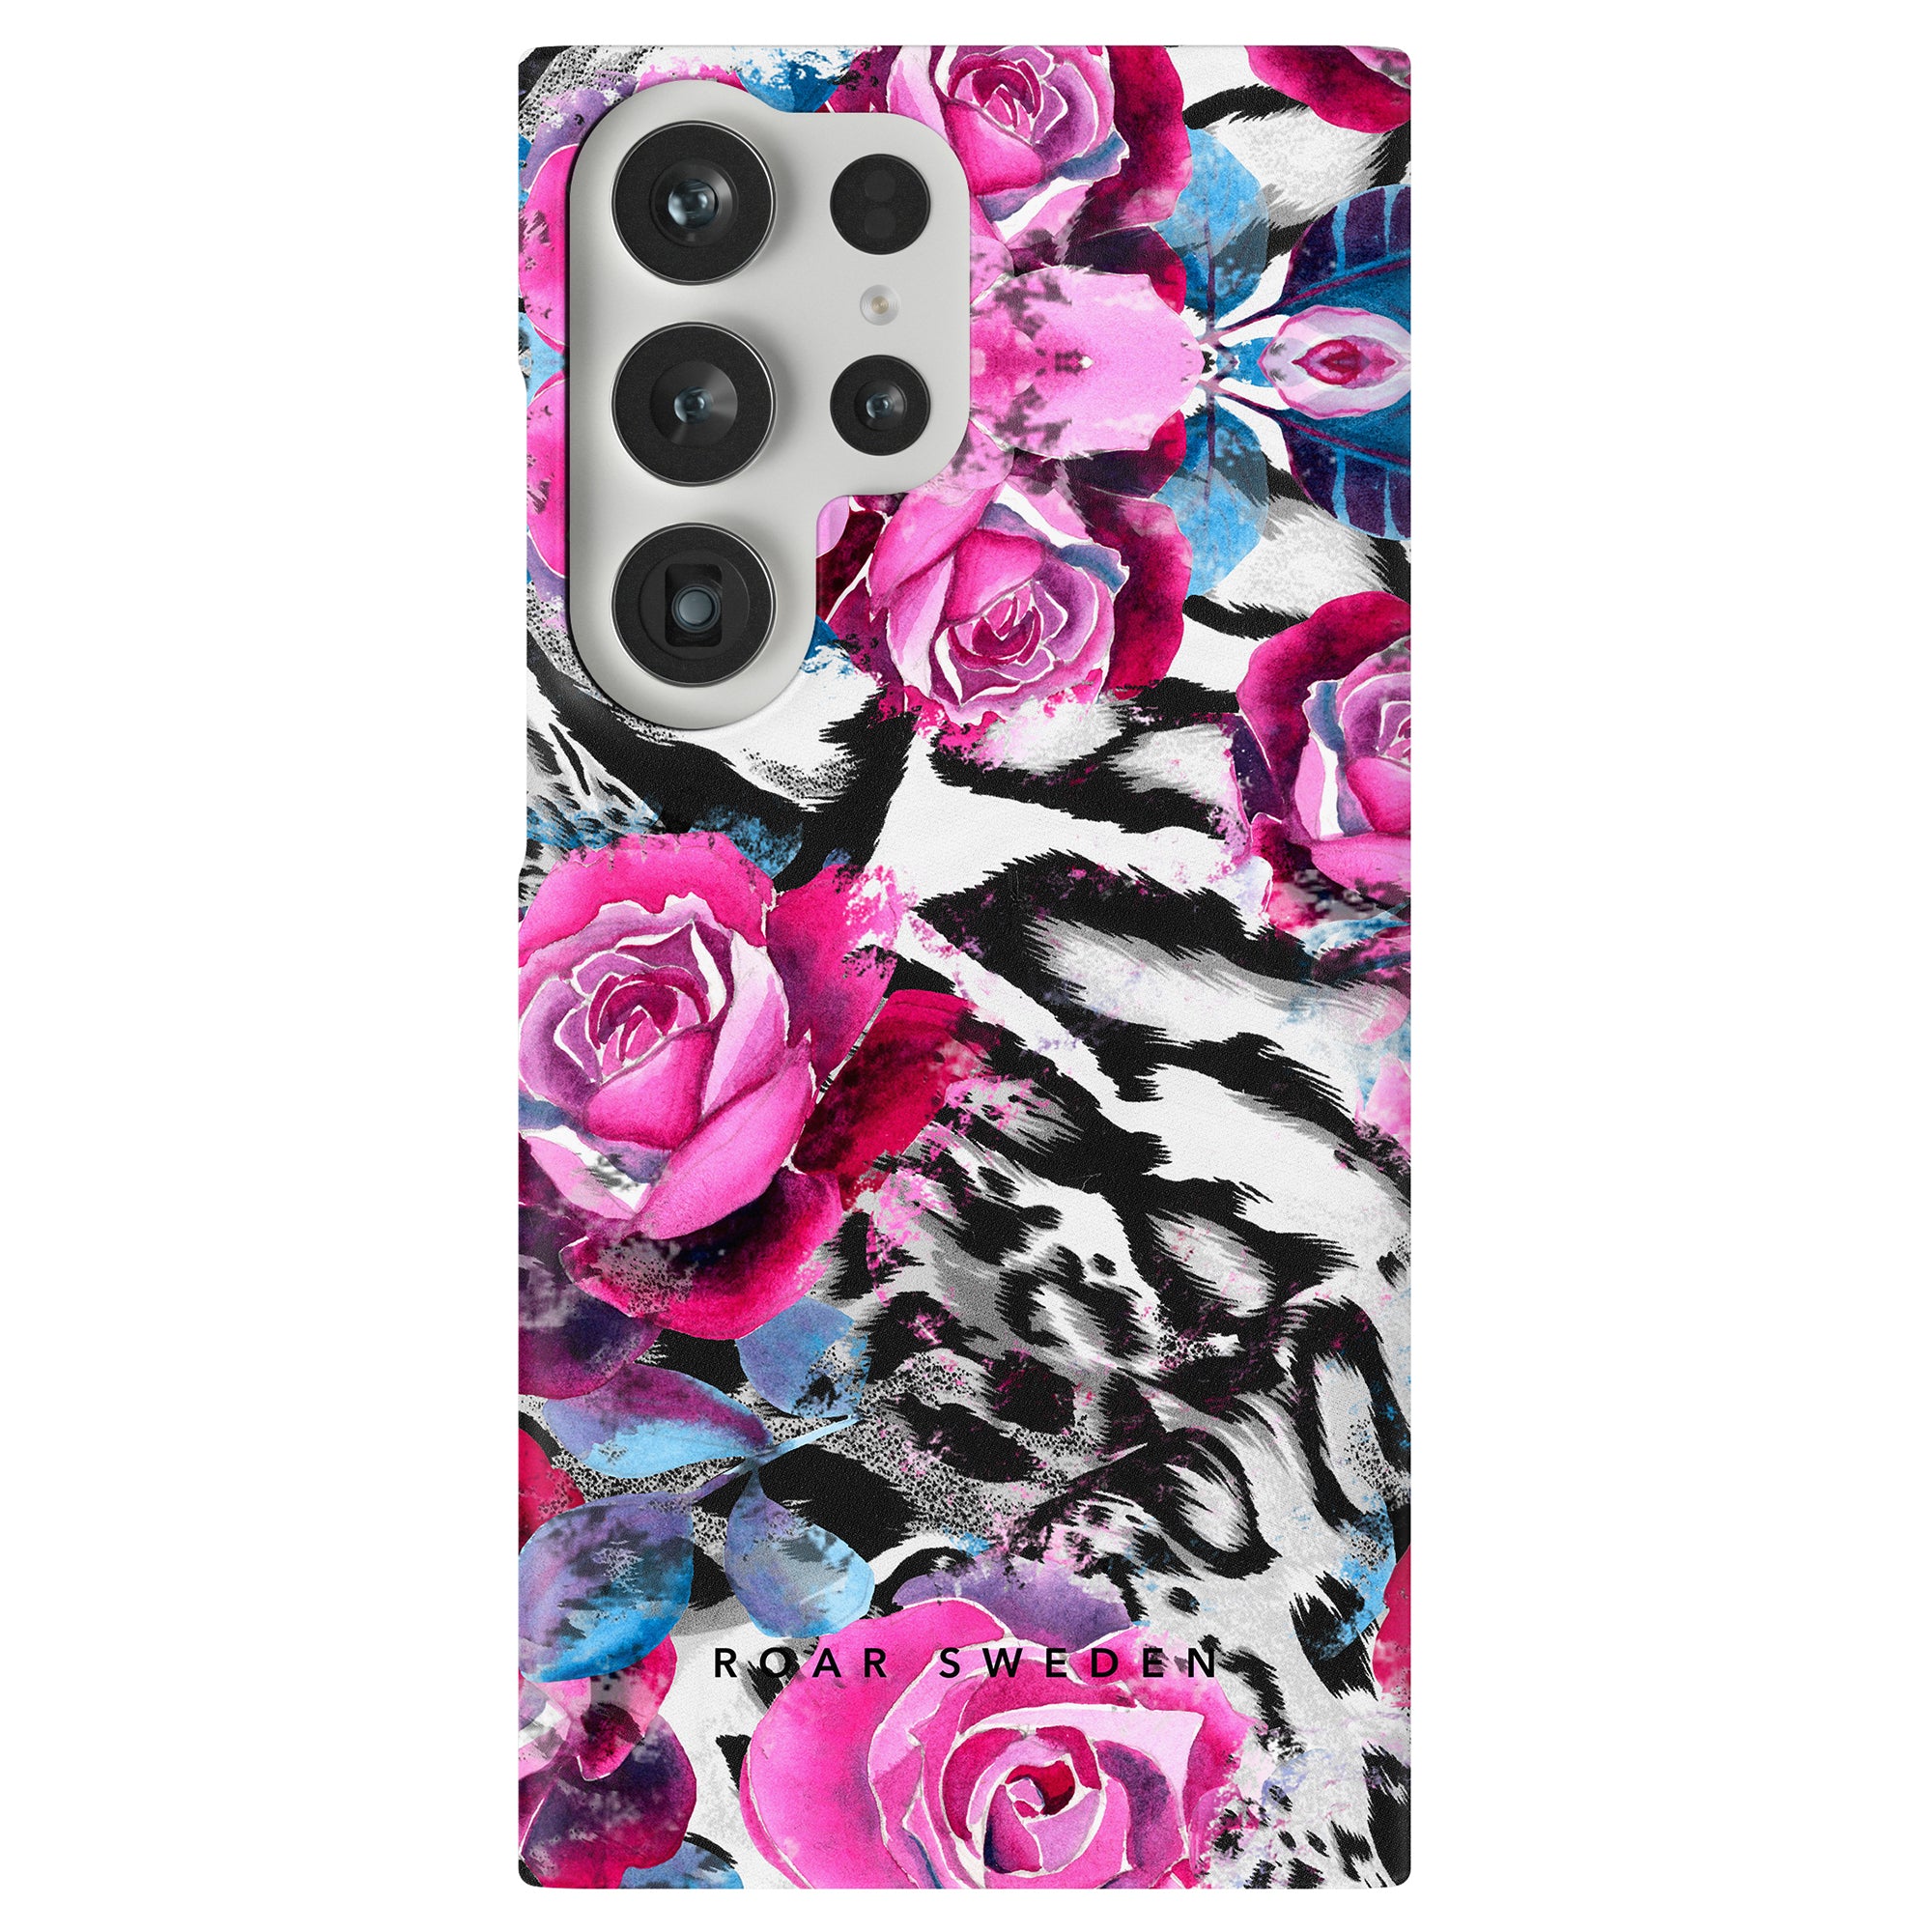 Produktbeskrivning: Förbättra din telefons stil med Rosy Wildcat - Slim fodral med en härlig kombination av rosa rosor och zebror. Den unika designen blandar sömlöst naturinspirerad skönhet med en touch av exotisk charm.